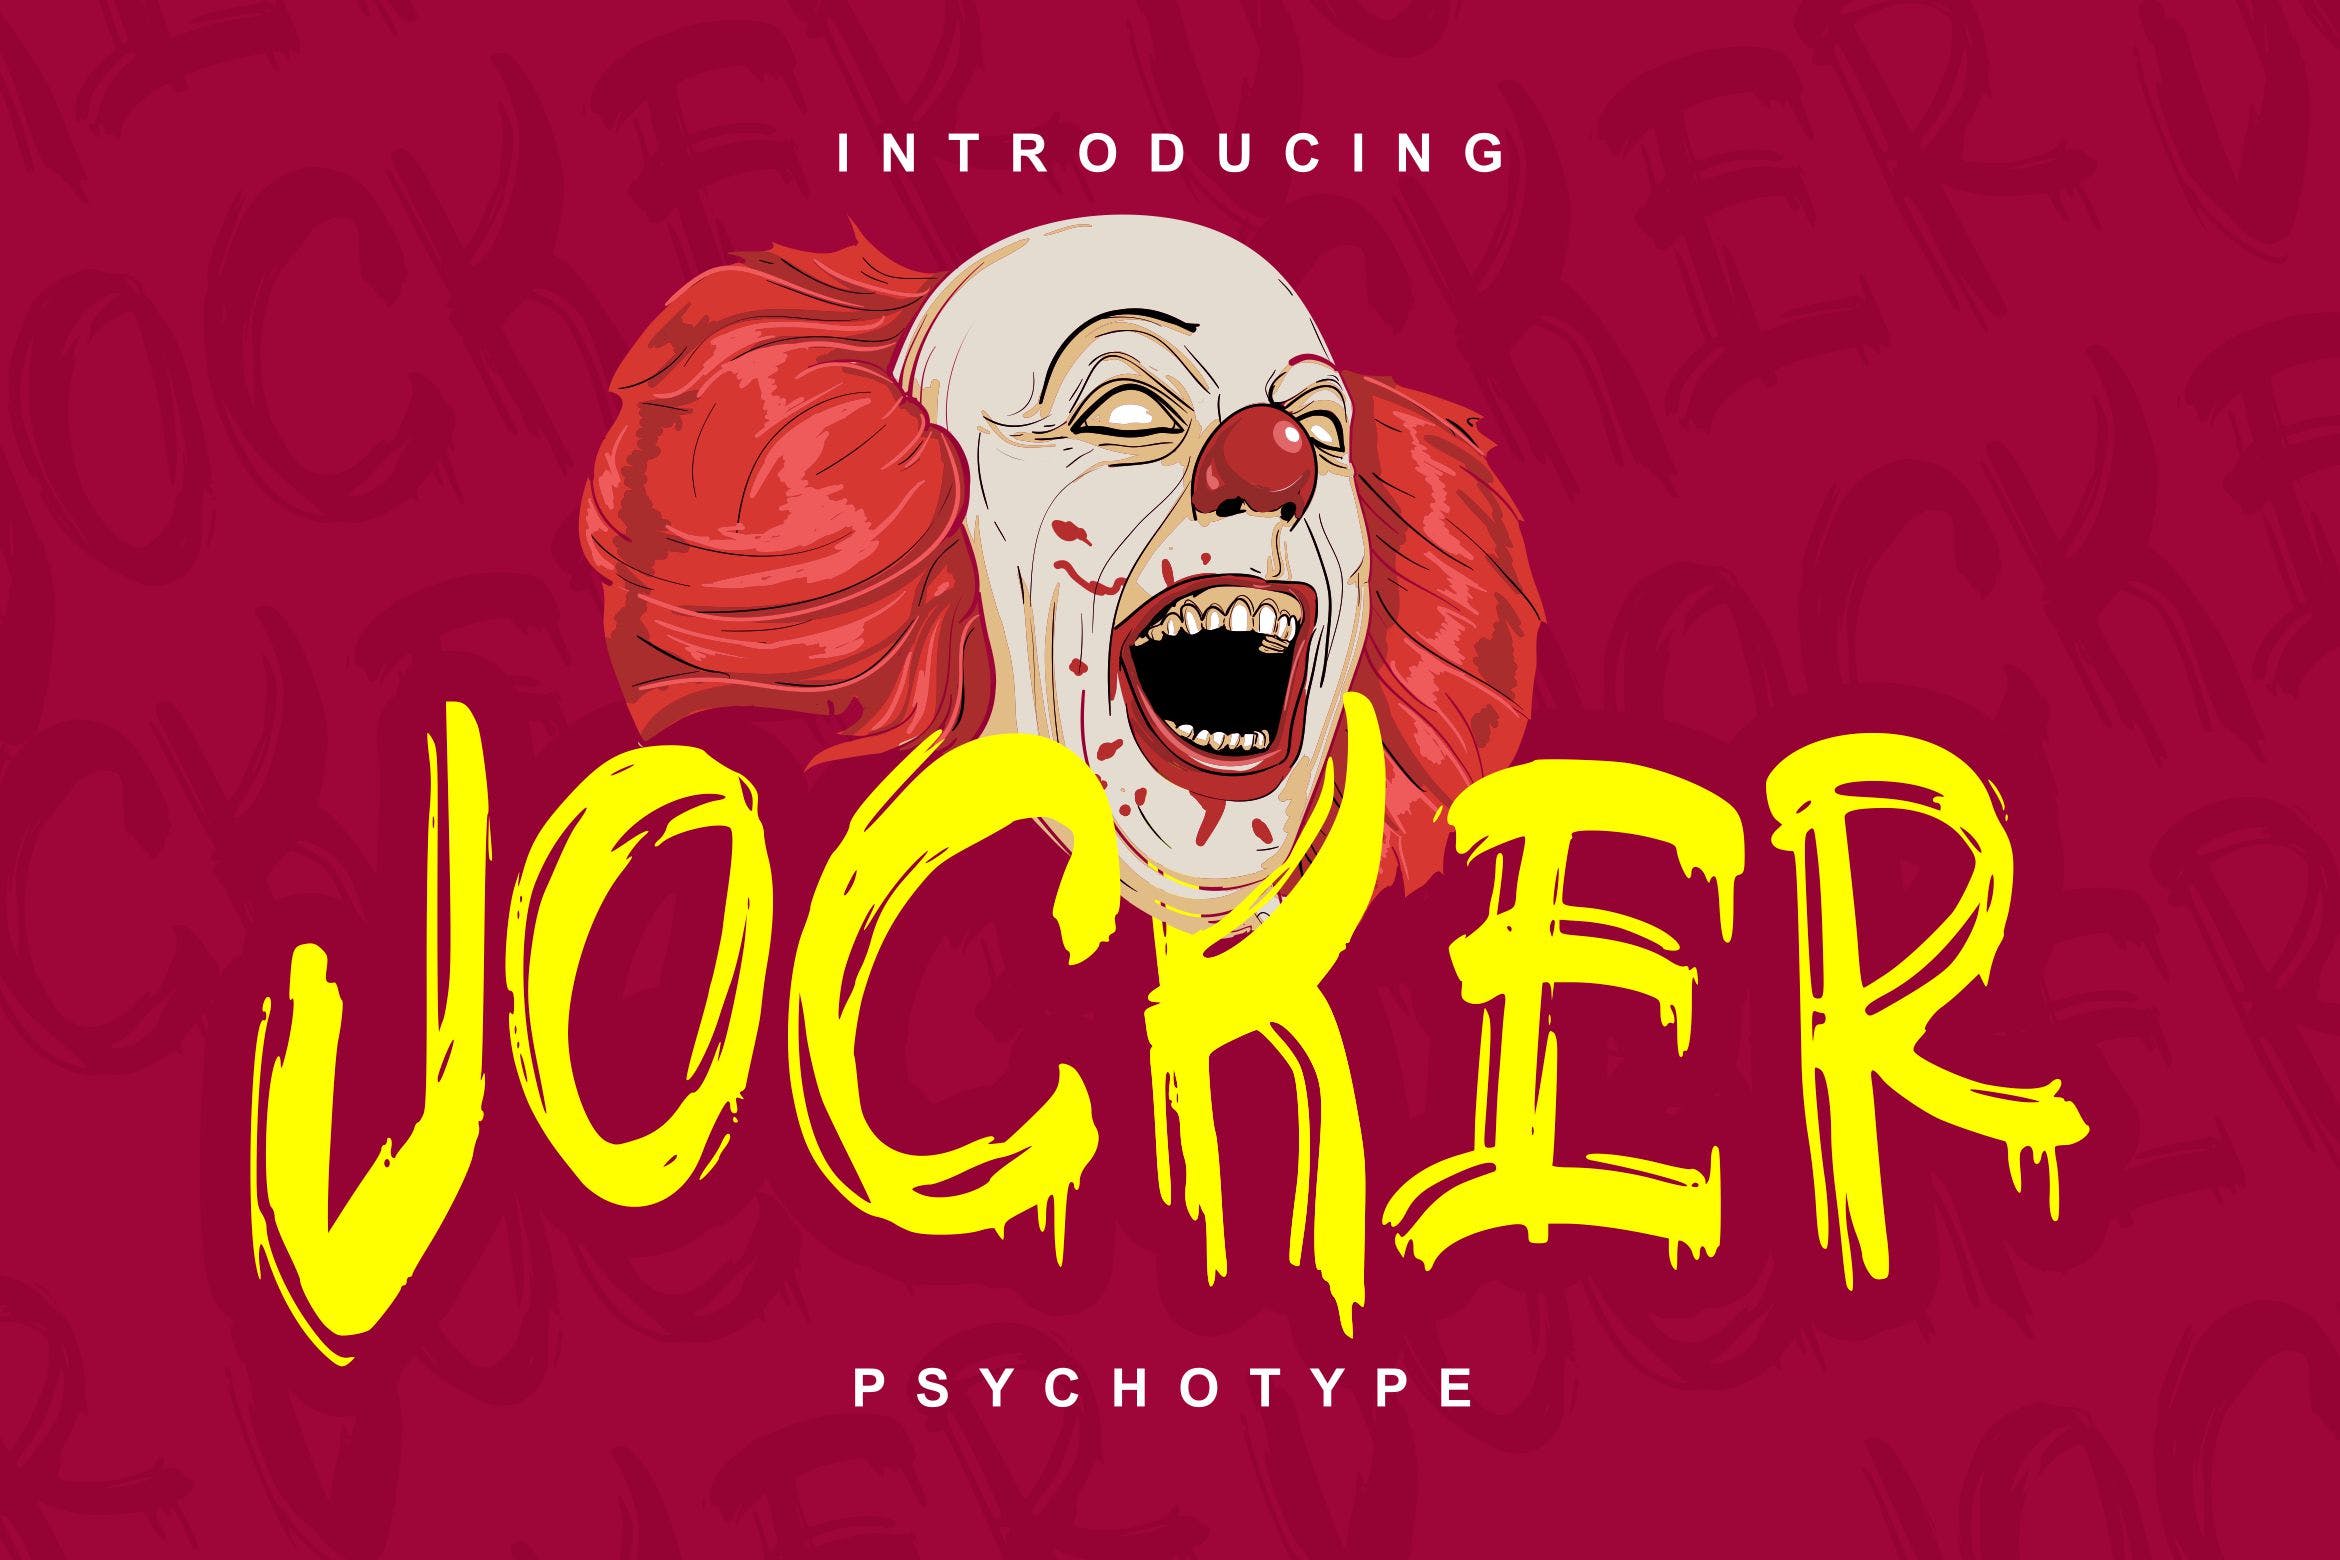 极具个性的英文笔刷装饰字体素材库精选 Jocker | Psychotype Font Theme插图